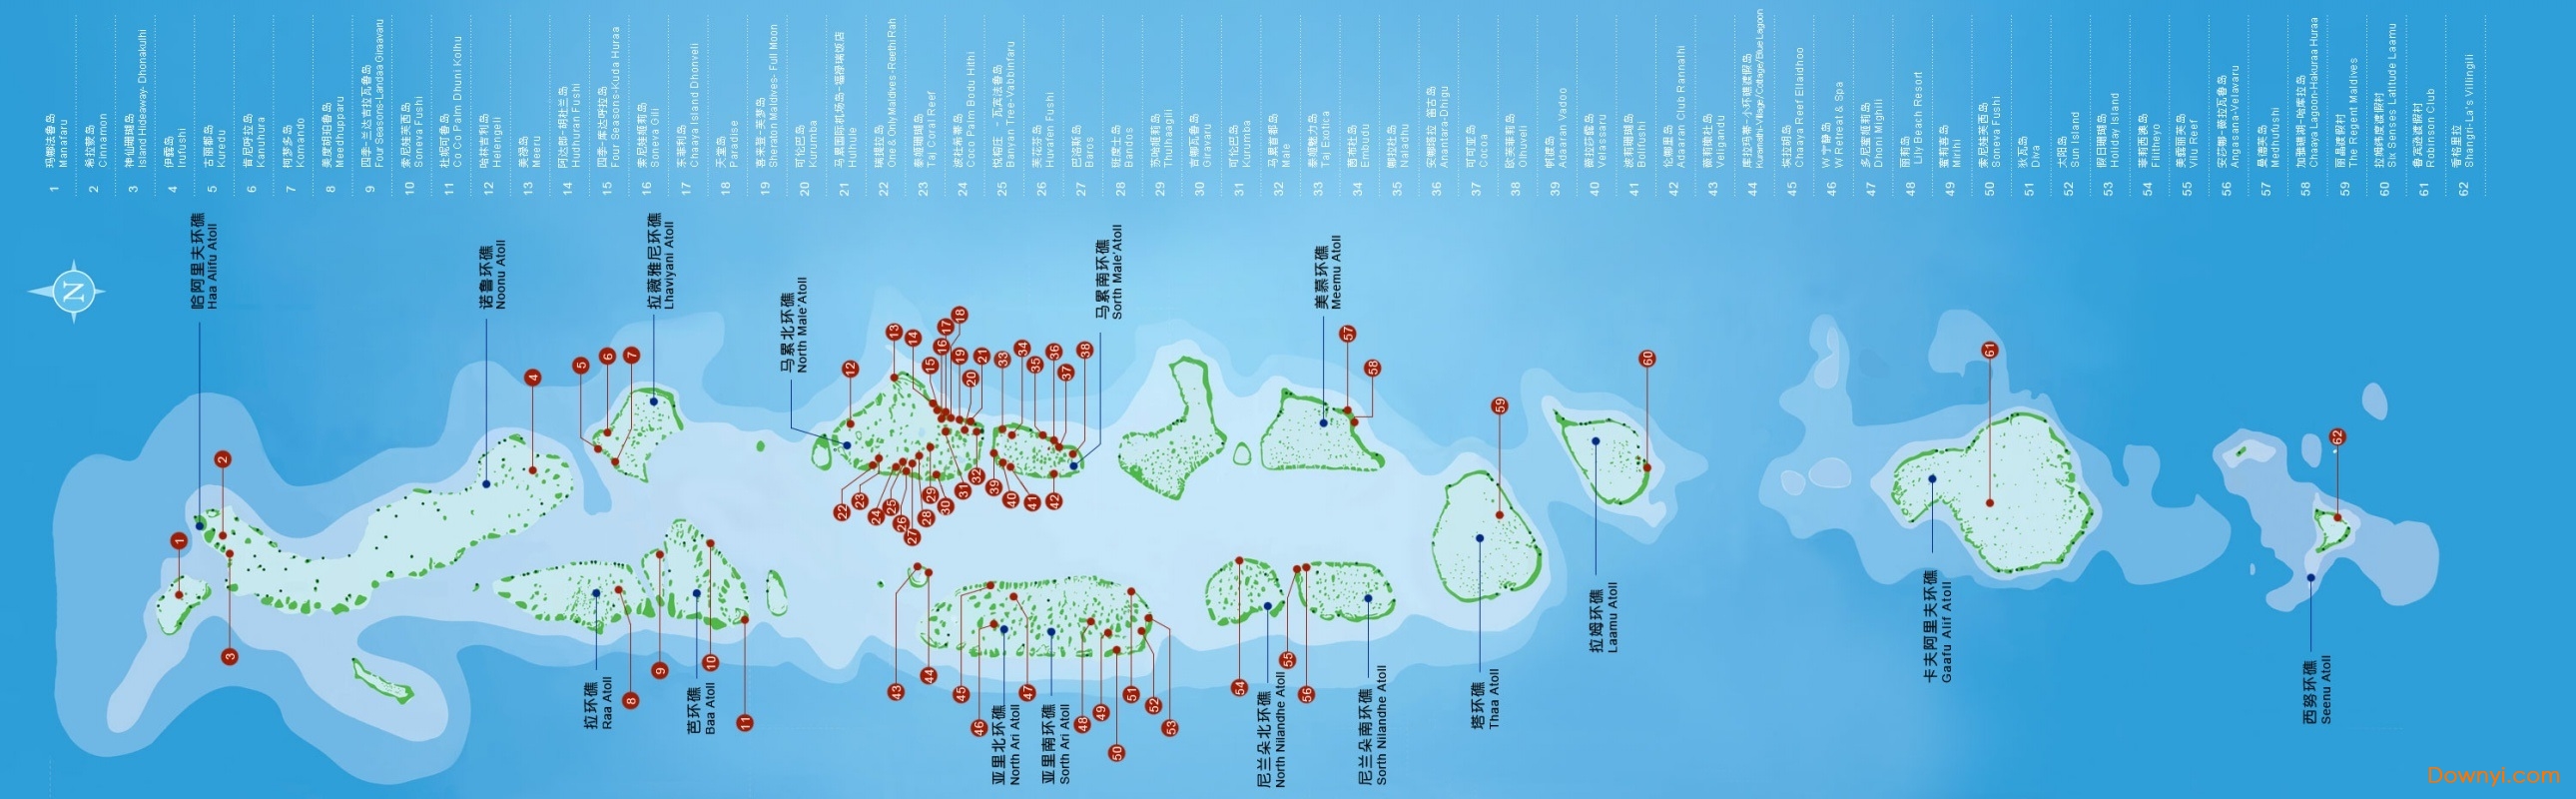 马尔代夫岛屿导游图 0